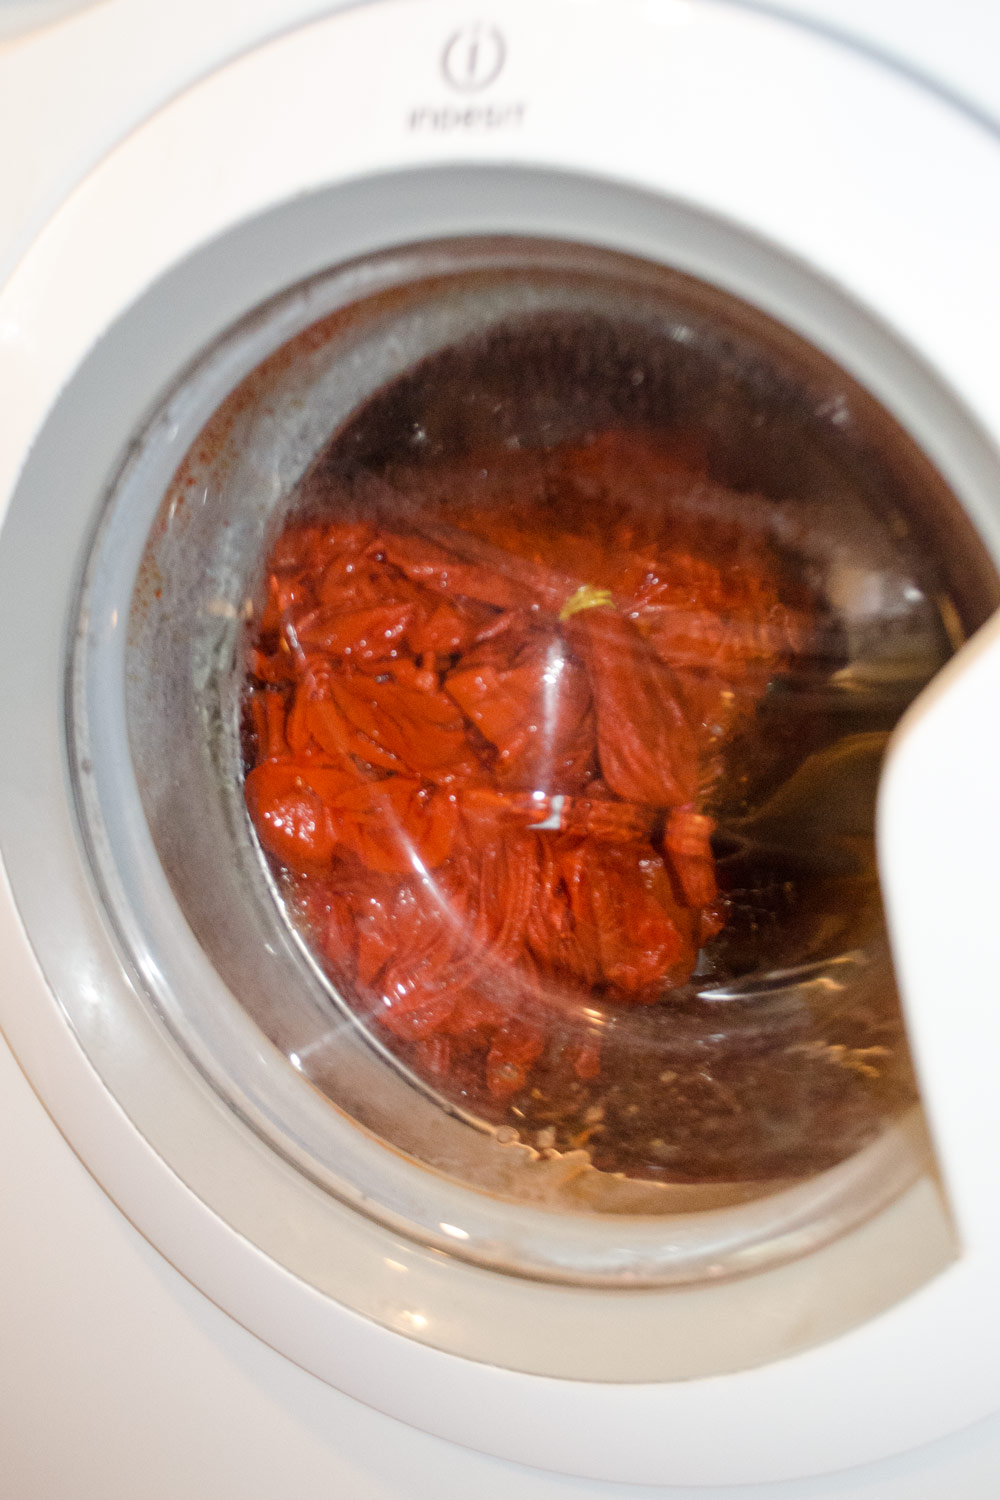 Bettwäsche färben | Ist Textilfarbe ungefährlich für die Waschmaschine? DIY Tutorial [unbeauftragte werbung]